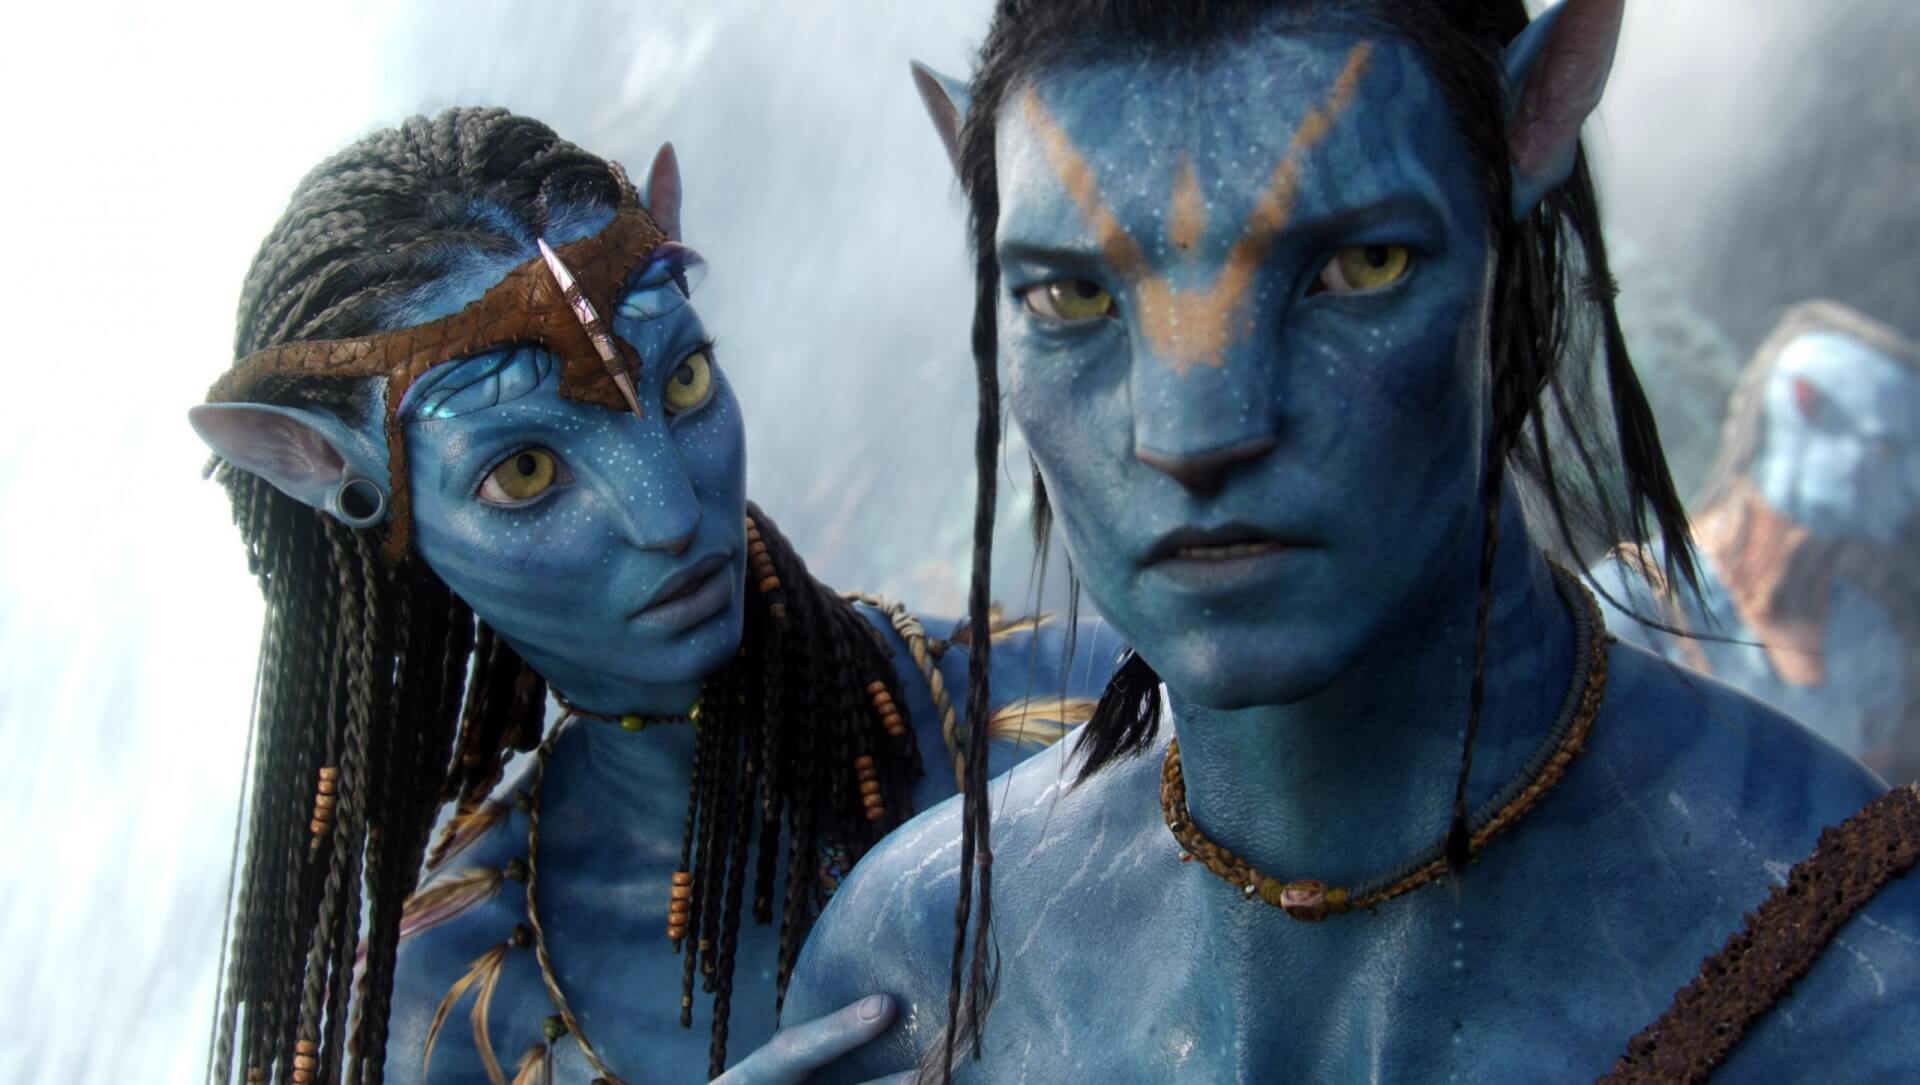 Jon Landau producer az Avatar 2. víz alatti cselekményéről mesélt